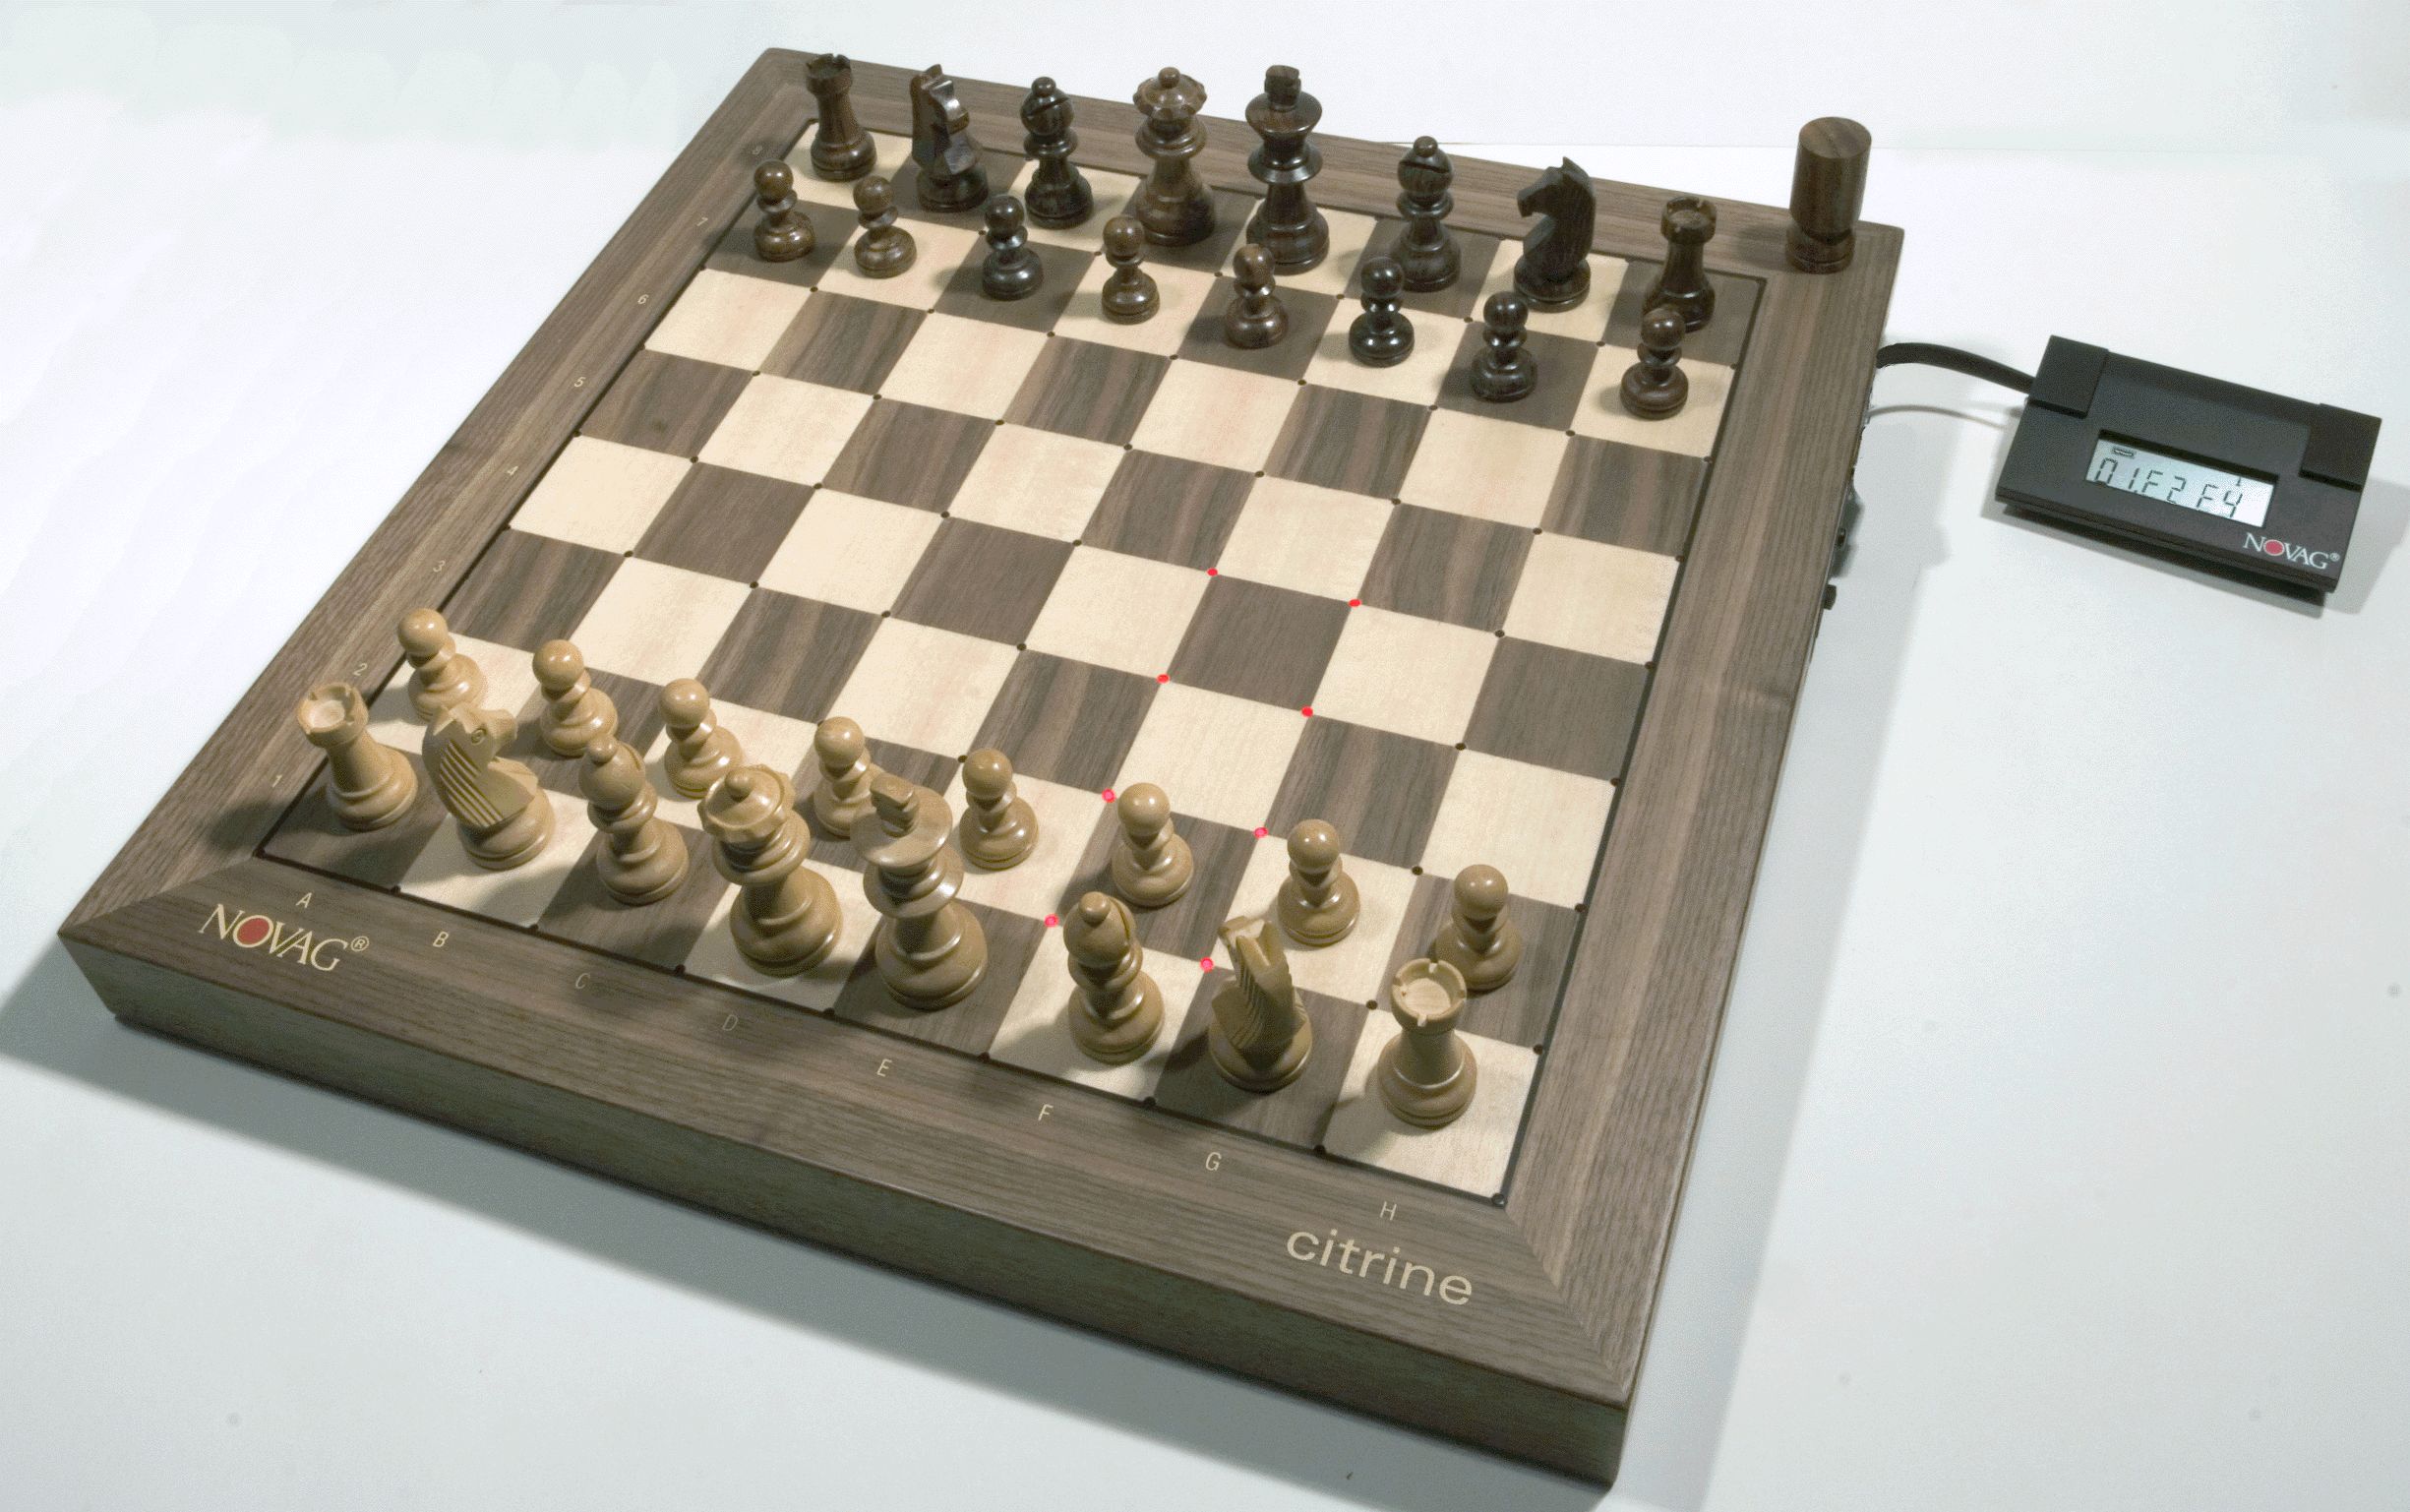 Partidas de xadrez: Vescovi x Gschwendtner